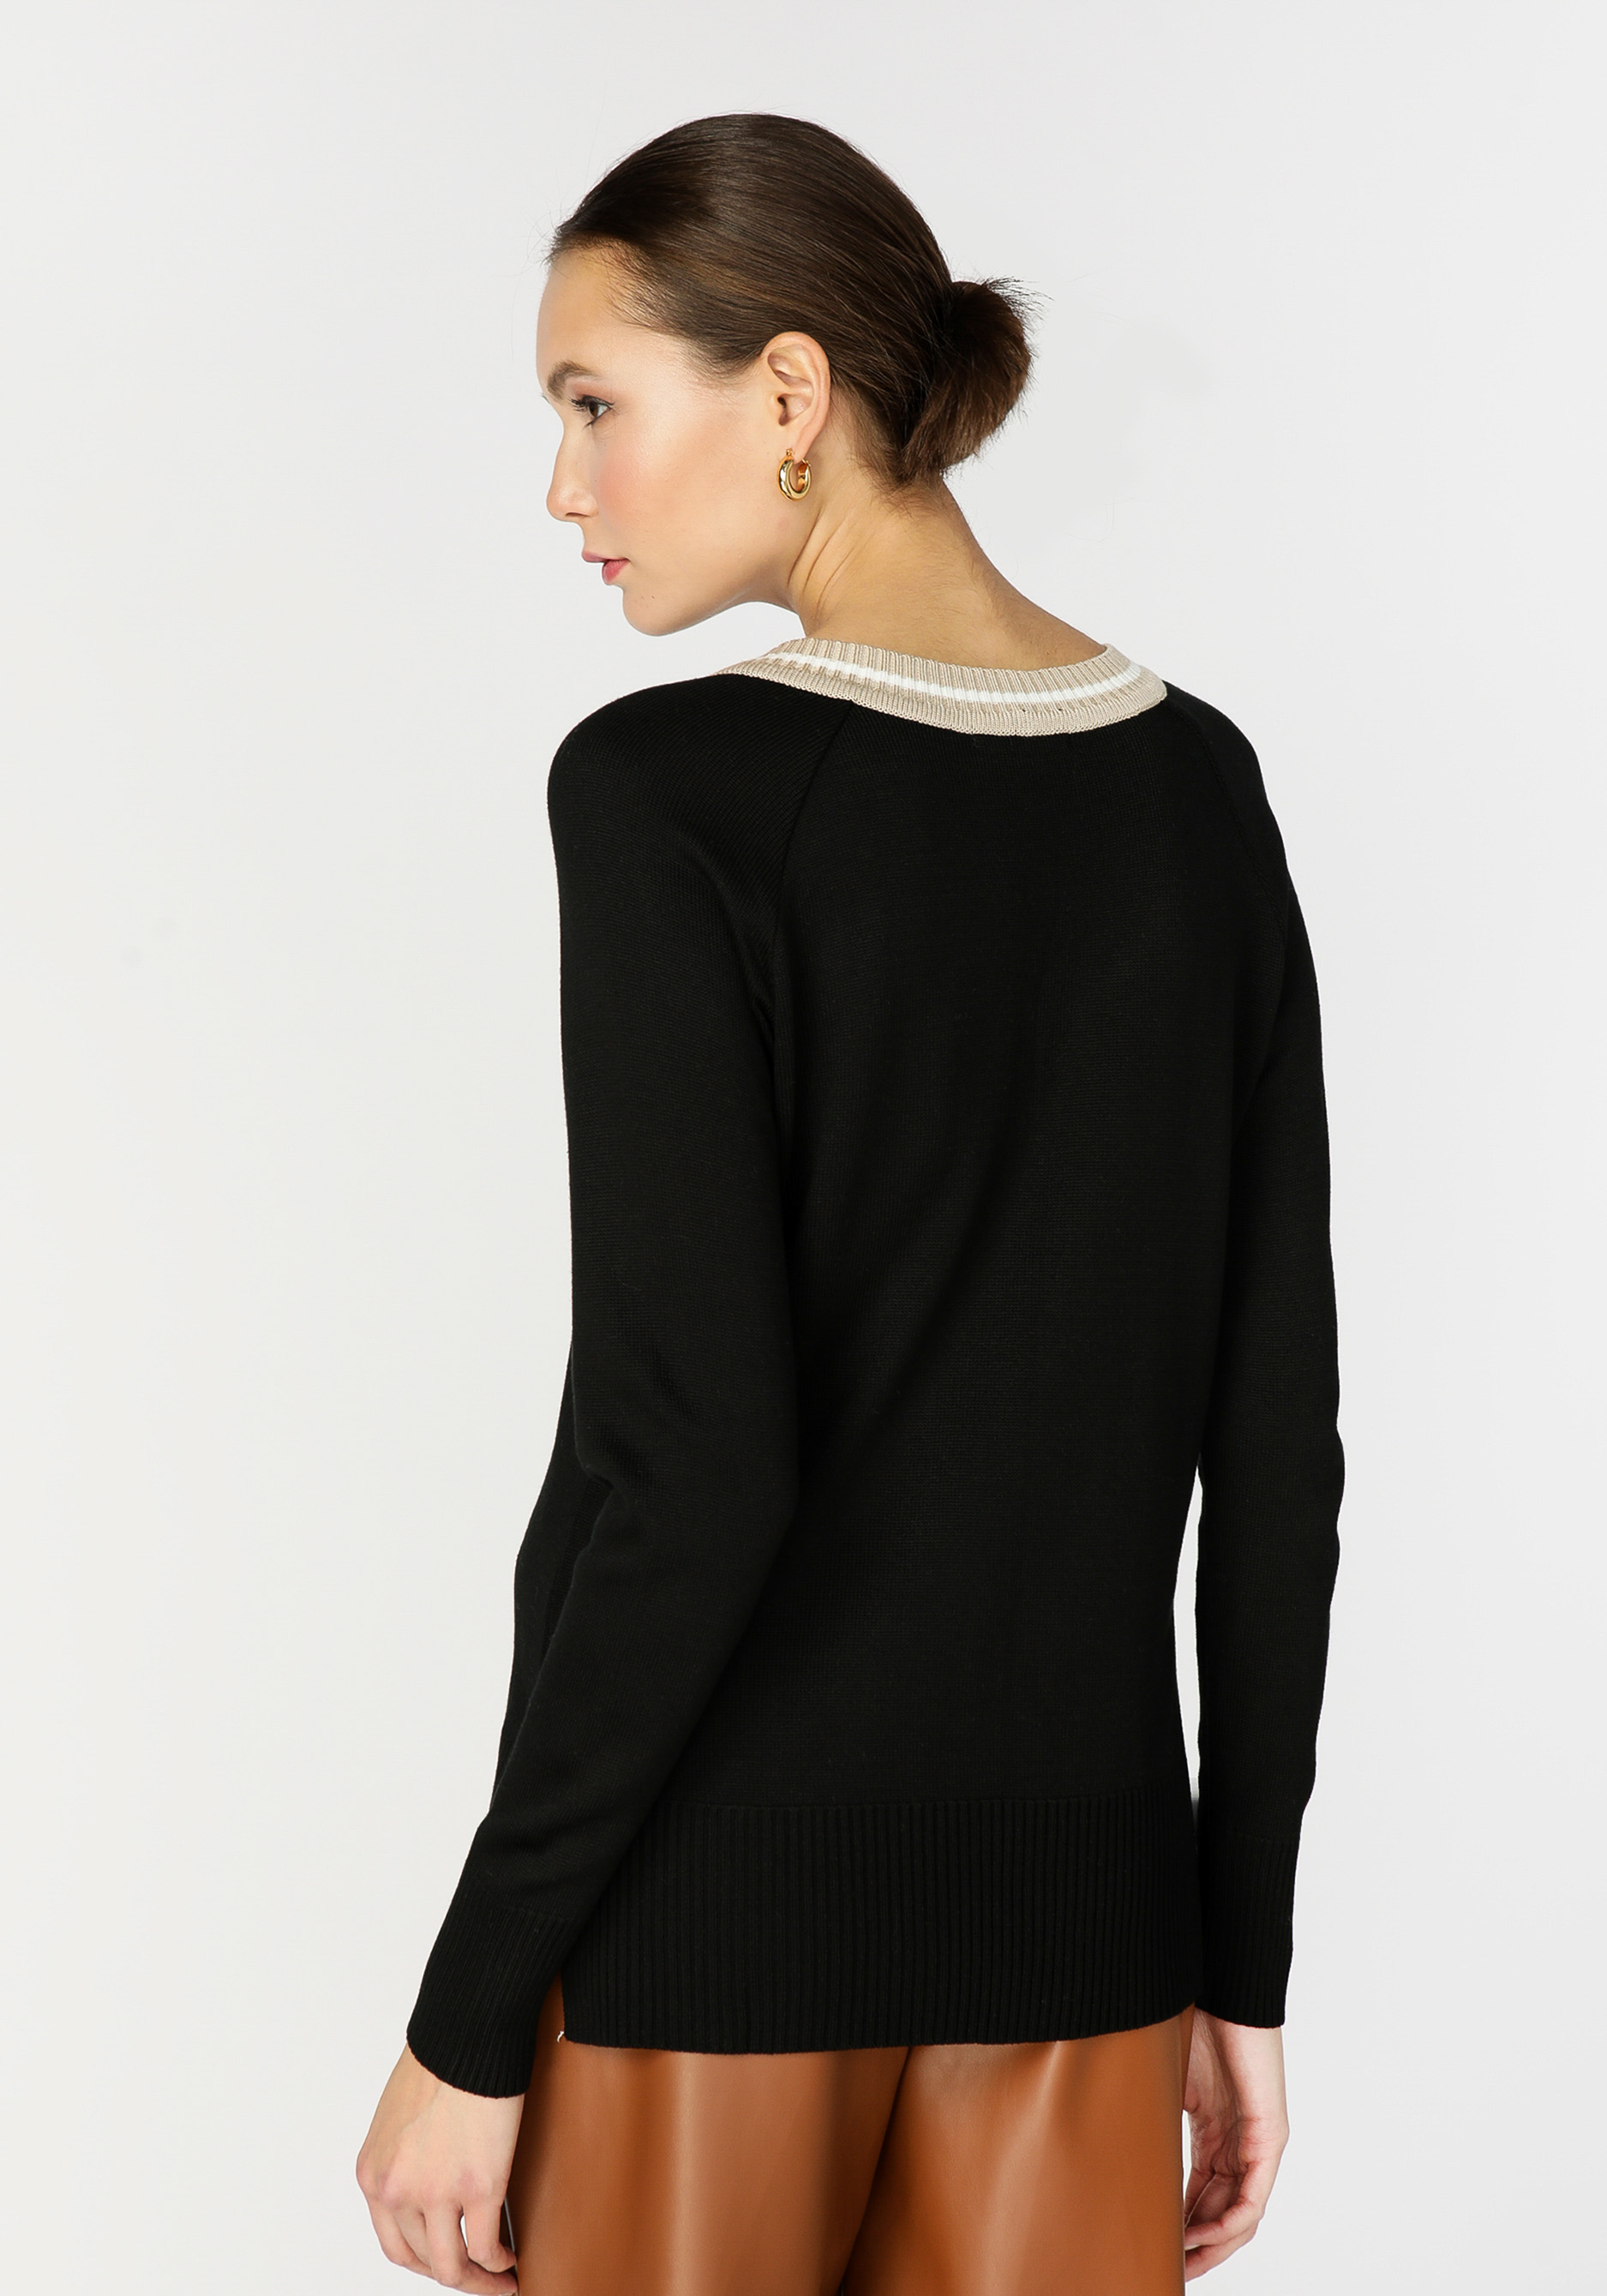 Пуловер женский с контрастной отделкой Vivawool, размер 58, цвет черный - фото 7